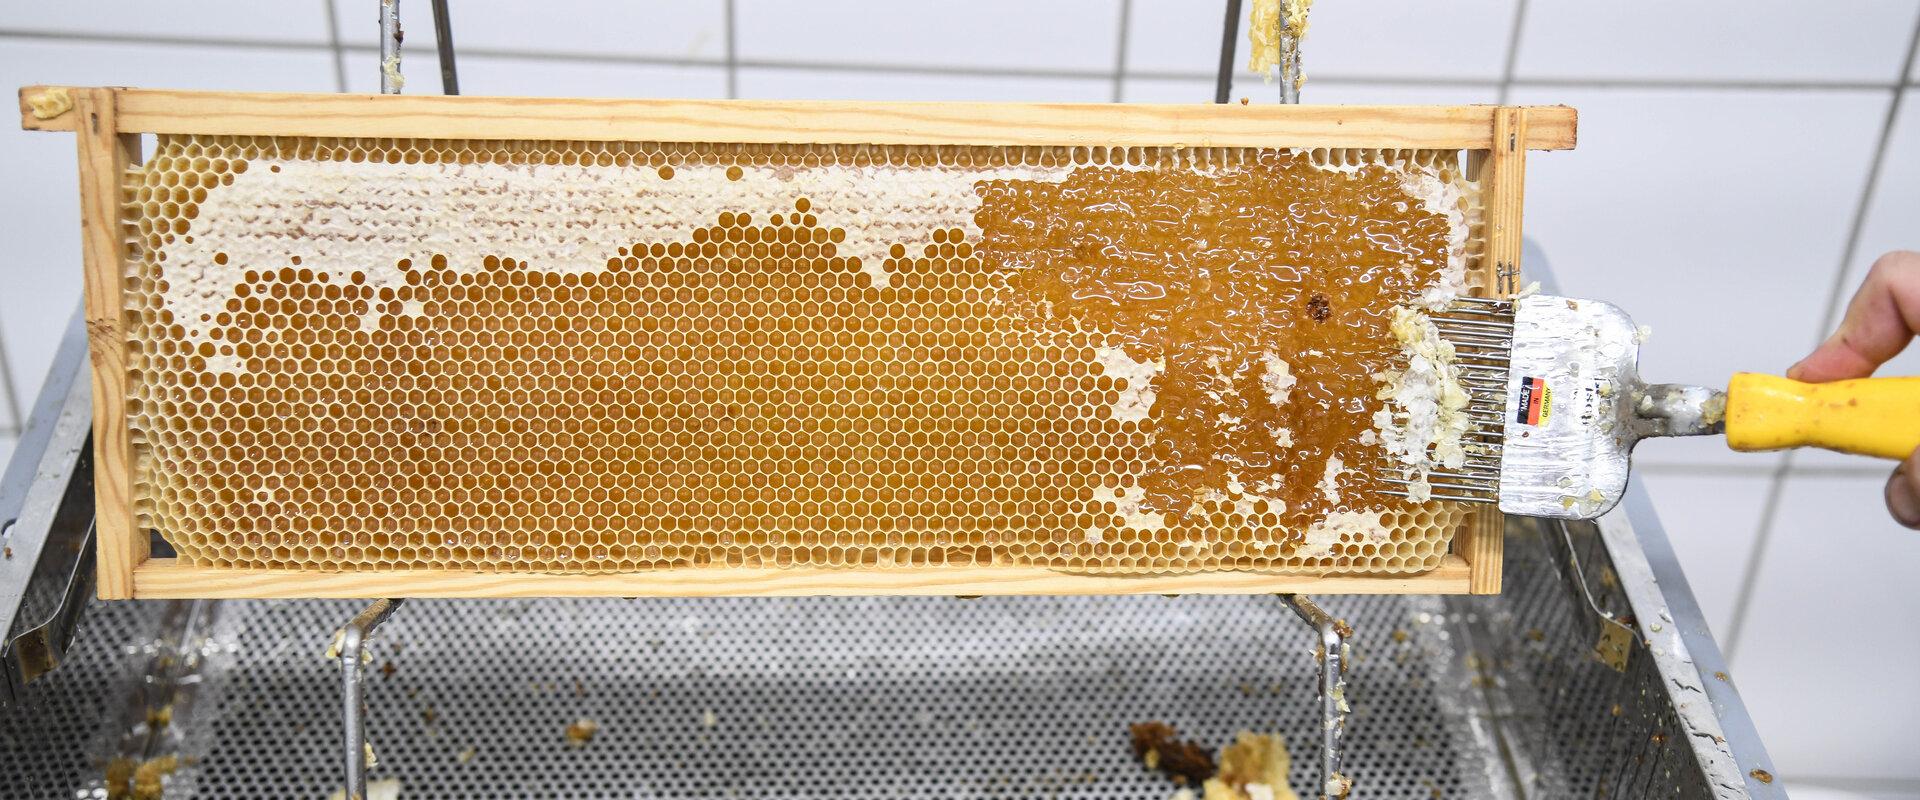 Freilegung von Waben Ein langsamer Moment bei Bienenstöcken